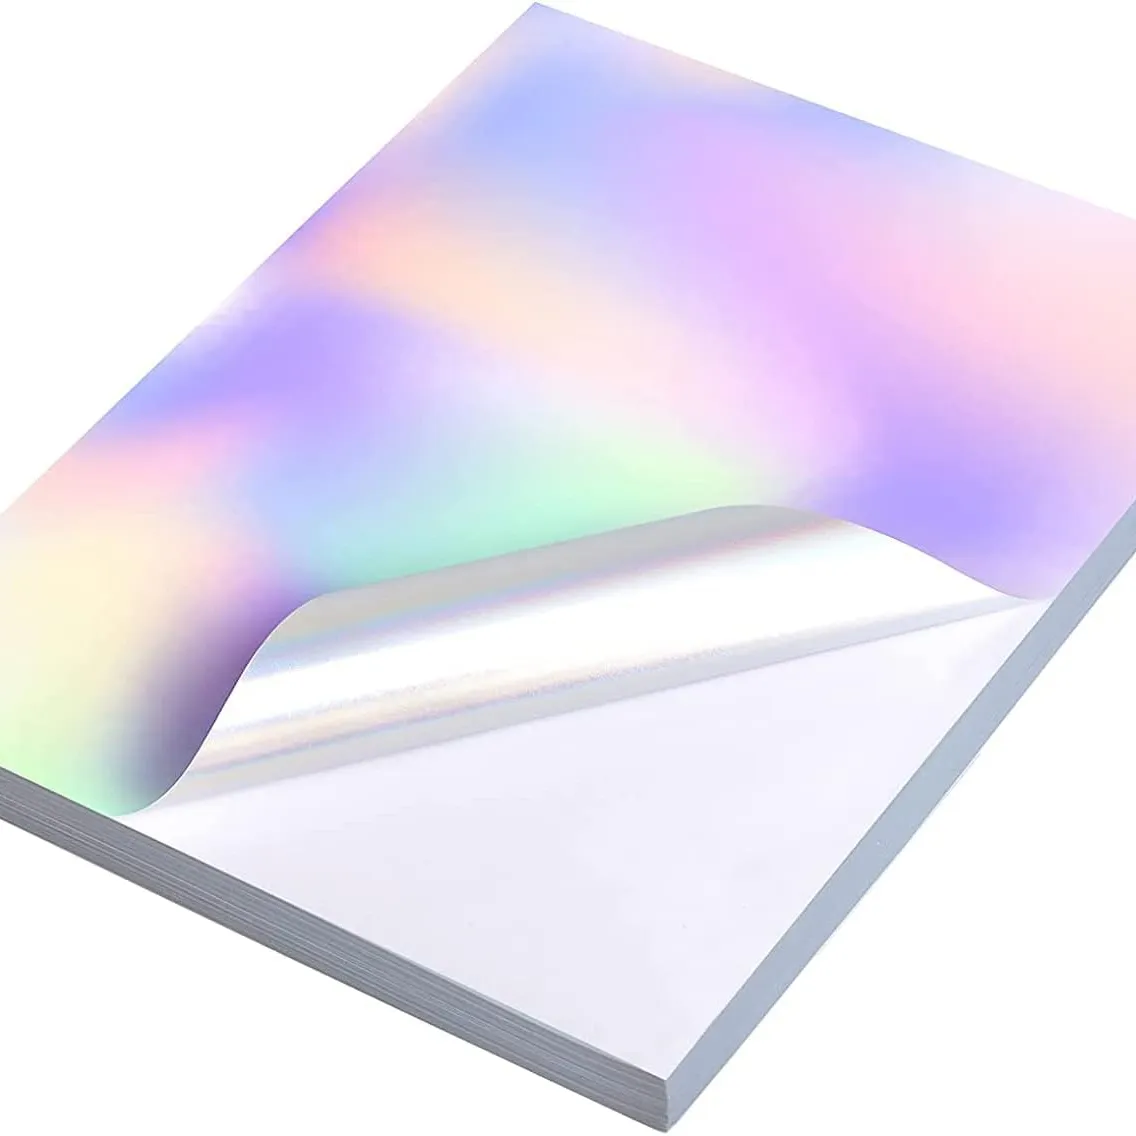 Papel adhesivo láser de vinilo imprimible holográfico de color arcoíris para impresora de inyección de tinta impresora láser en tamaño carta